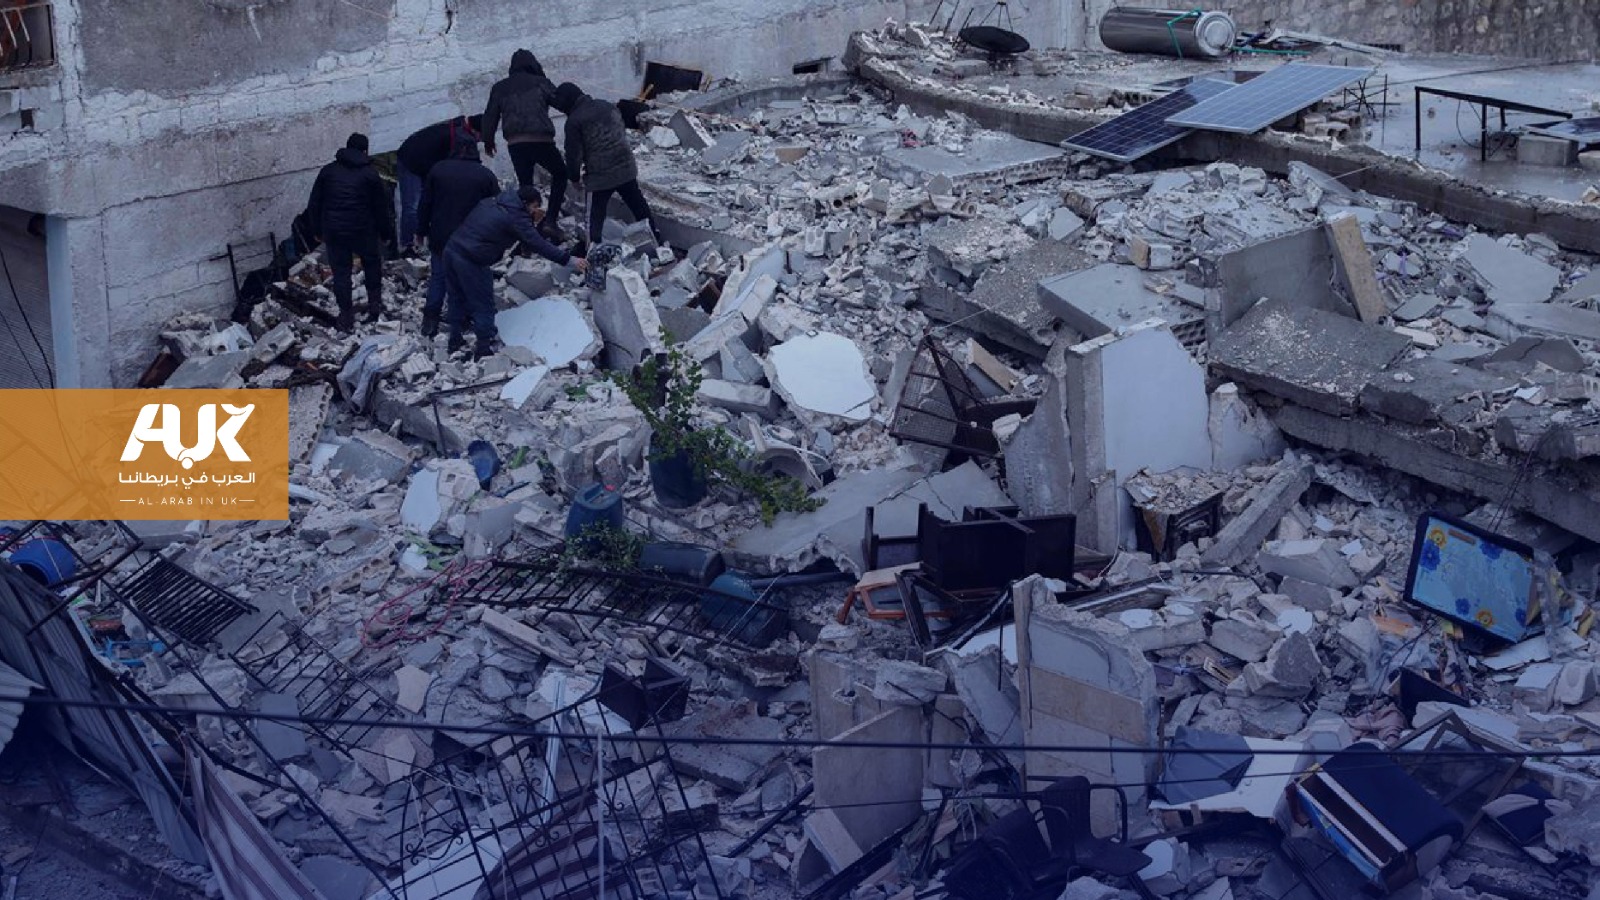 حزن عميق يخيم على أوساط مغاربة بريطانيا على إثر الزلزال